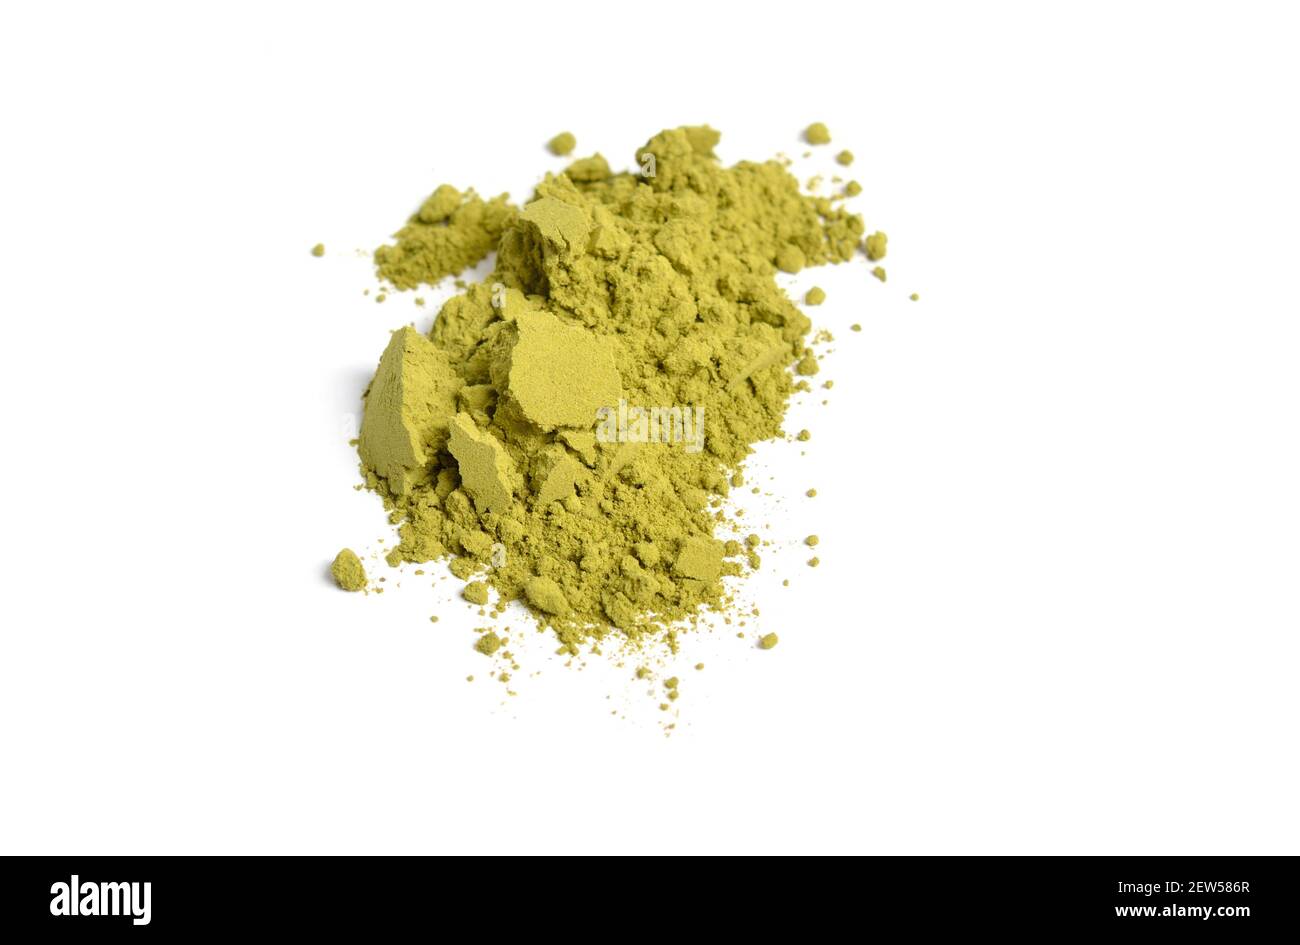 Matcha è polvere finemente macinata di foglie di tè verde coltivate e lavorate, tradizionalmente consumate nell'Asia orientale. Foto Stock